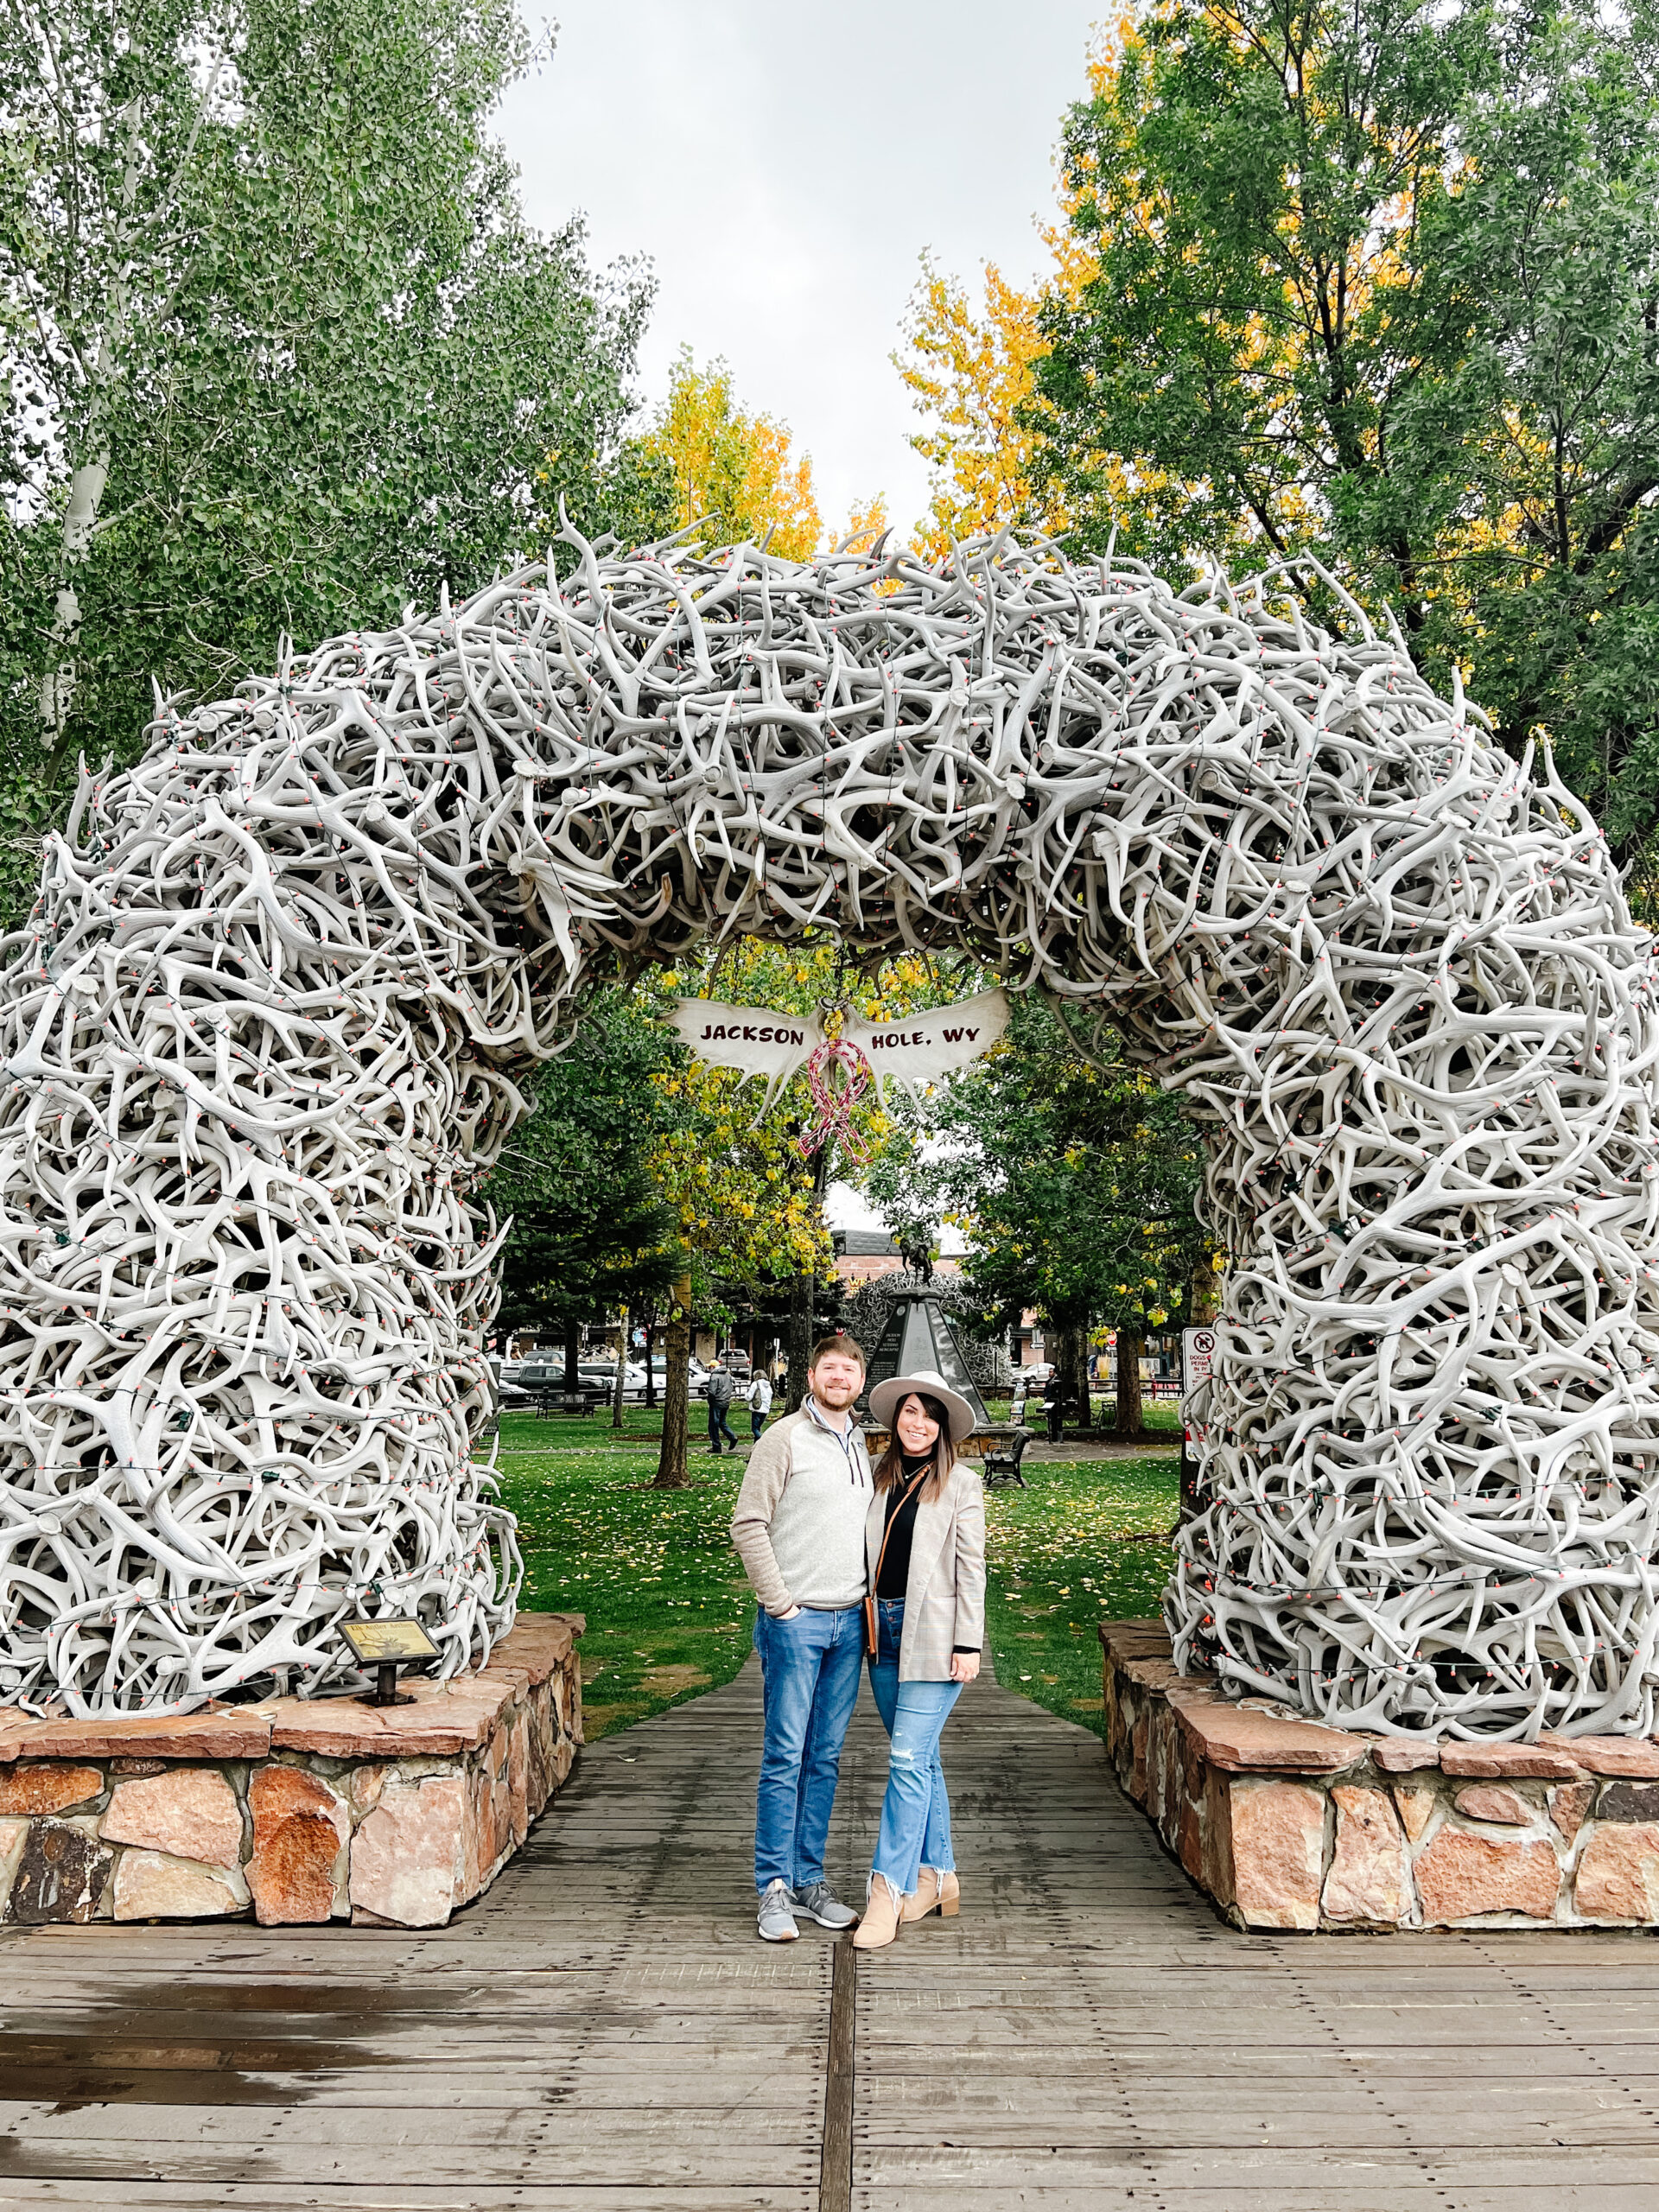 Jackson Square Elk Antler Arch, John and Brittney Naylor standing together underneath